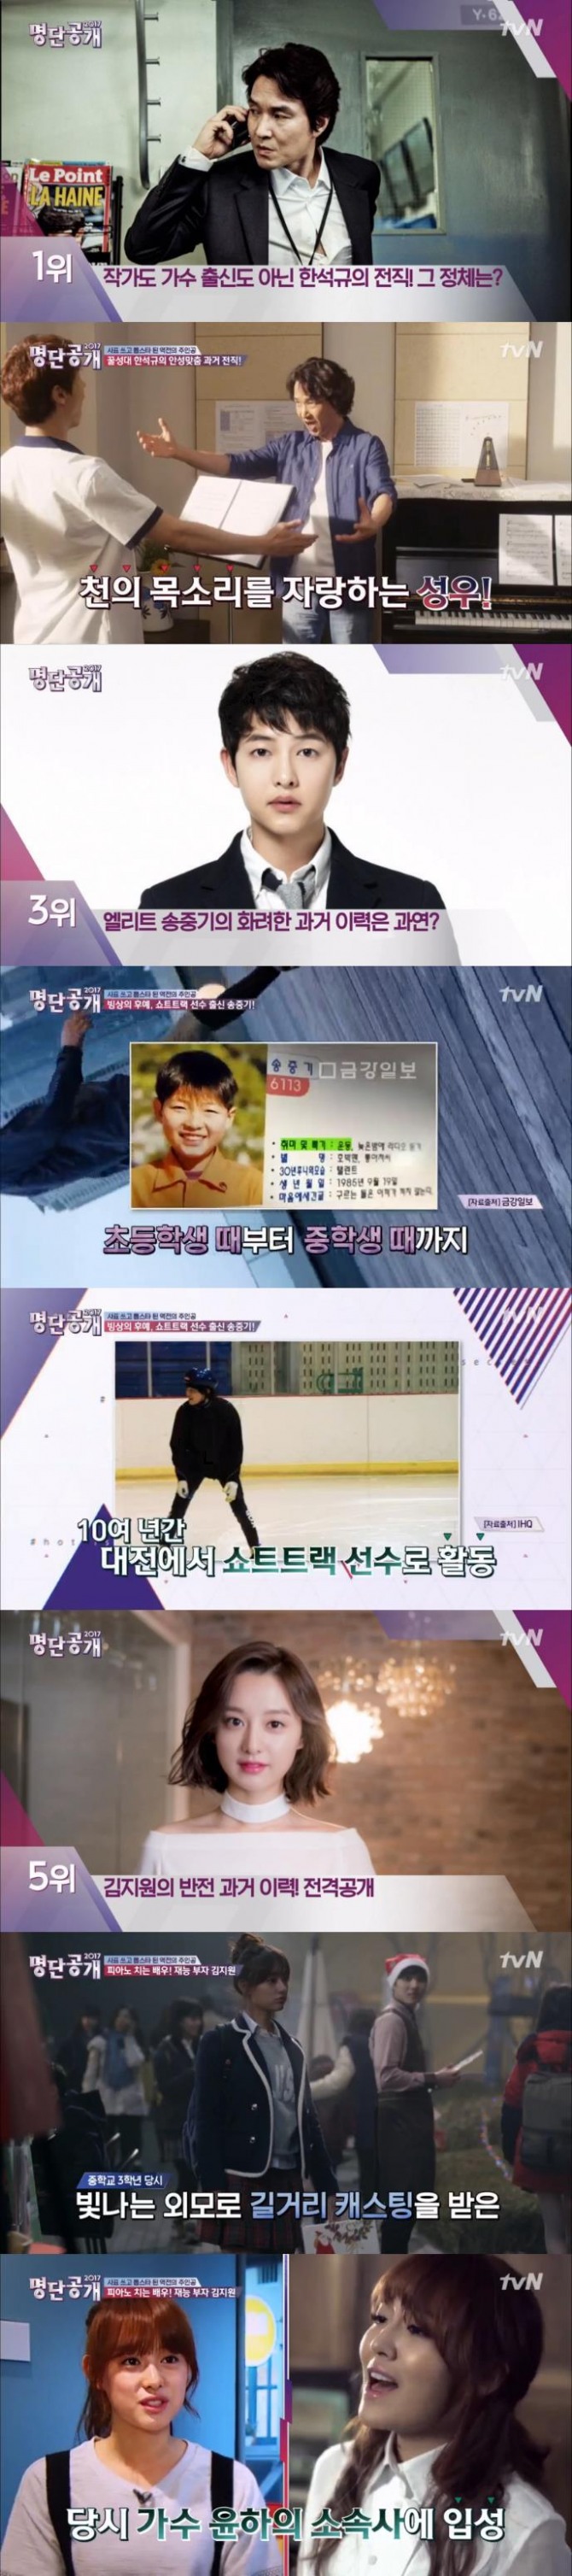 16일 방송된 tvN '명단공개'에서 한석규가 반전 과거 직업을 가진 스타 1위에 올랐다./사진=tvN 방송 캡처